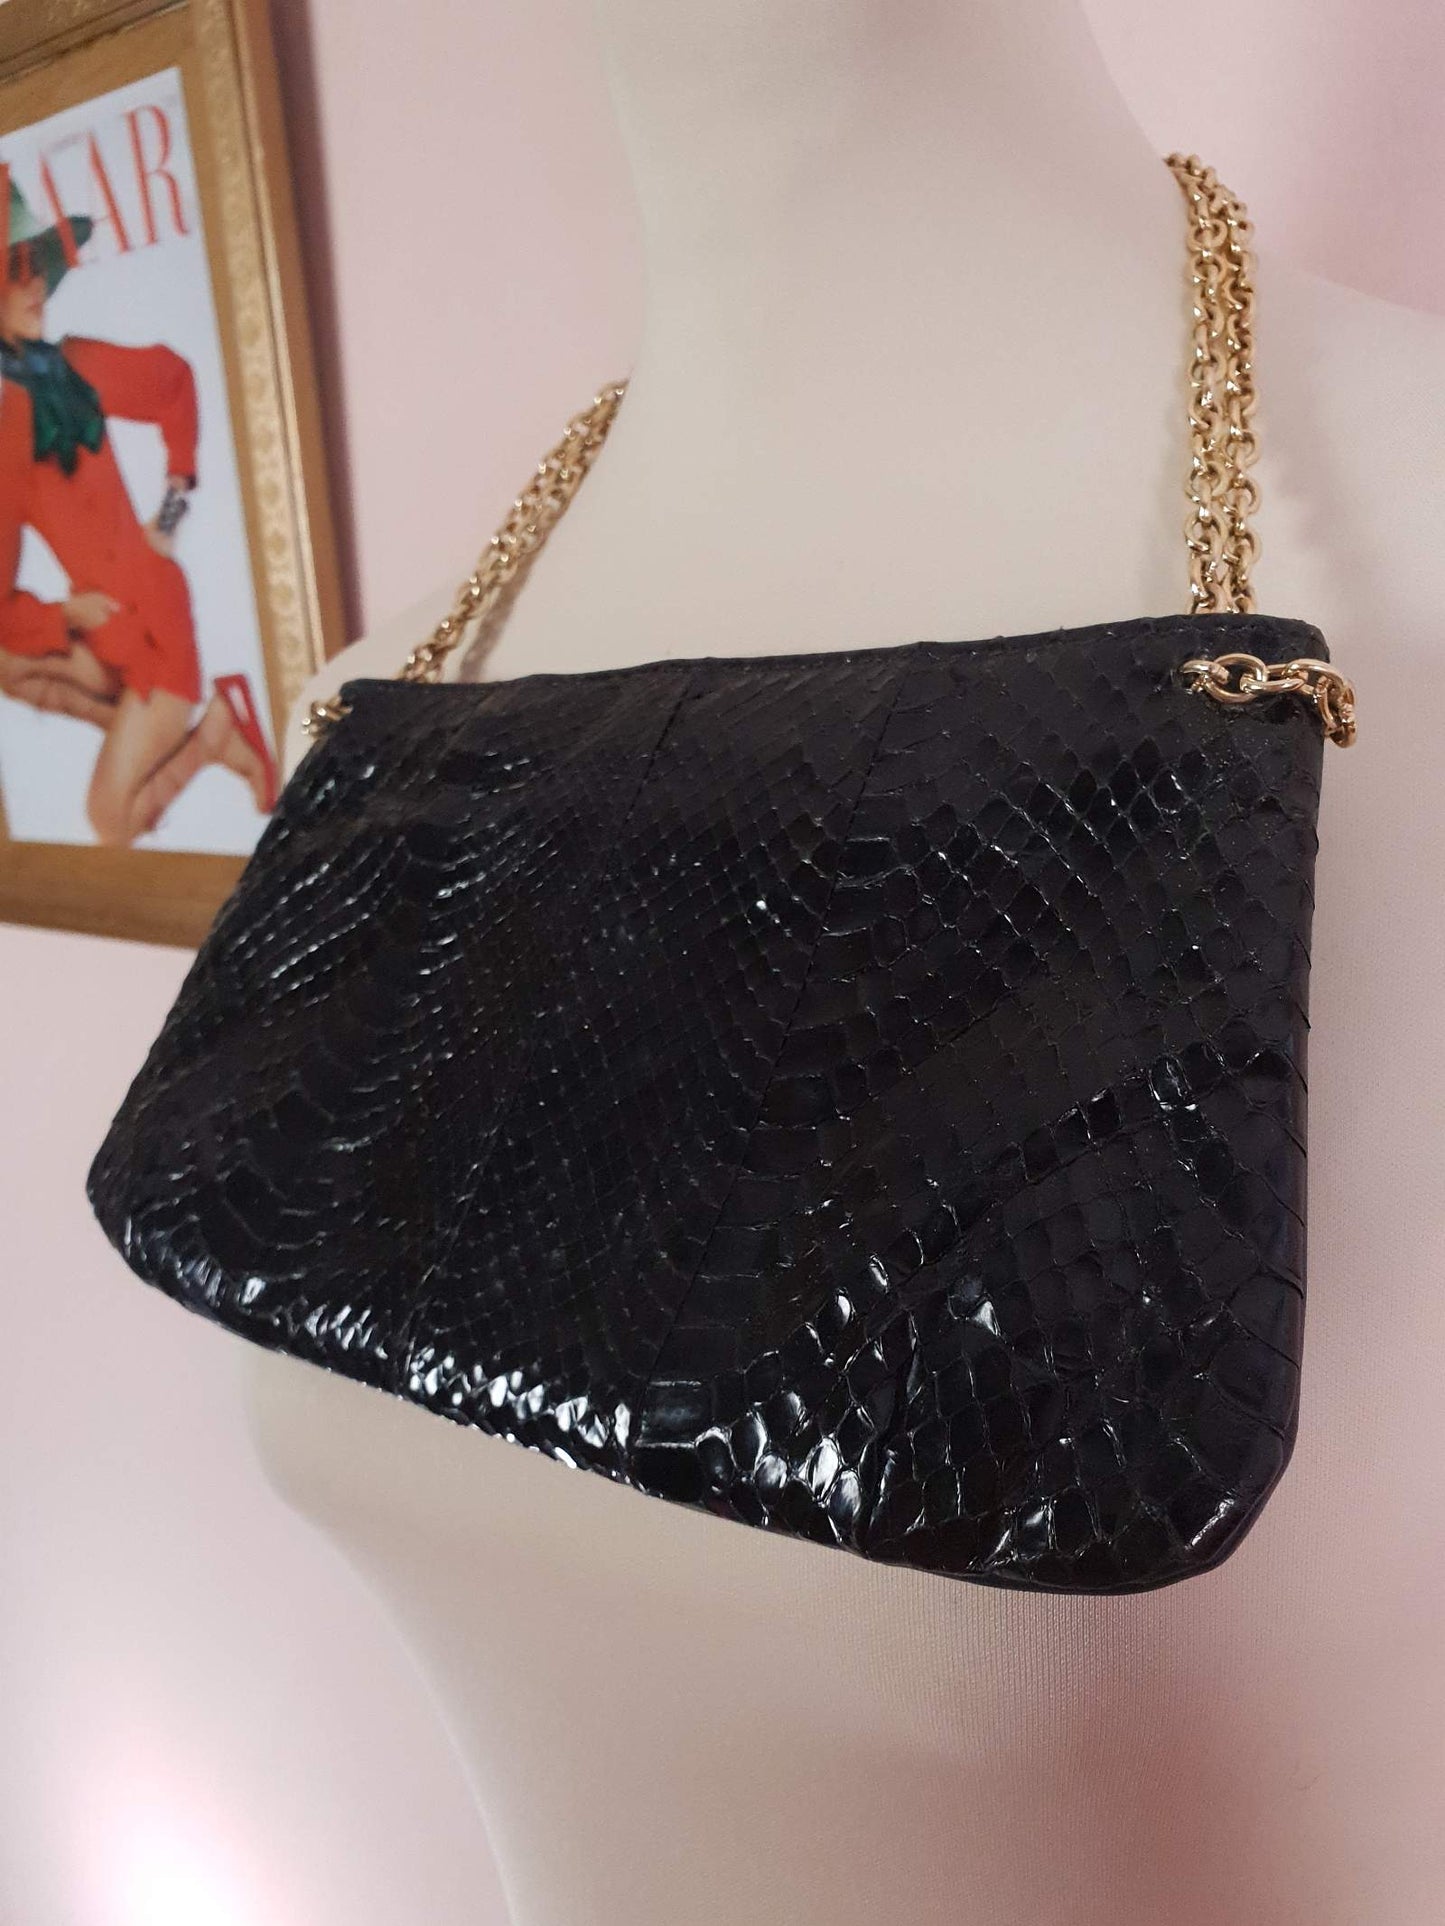 Vintage 1960s Snakeskin Leather Handbag Black Blue Evening Bag